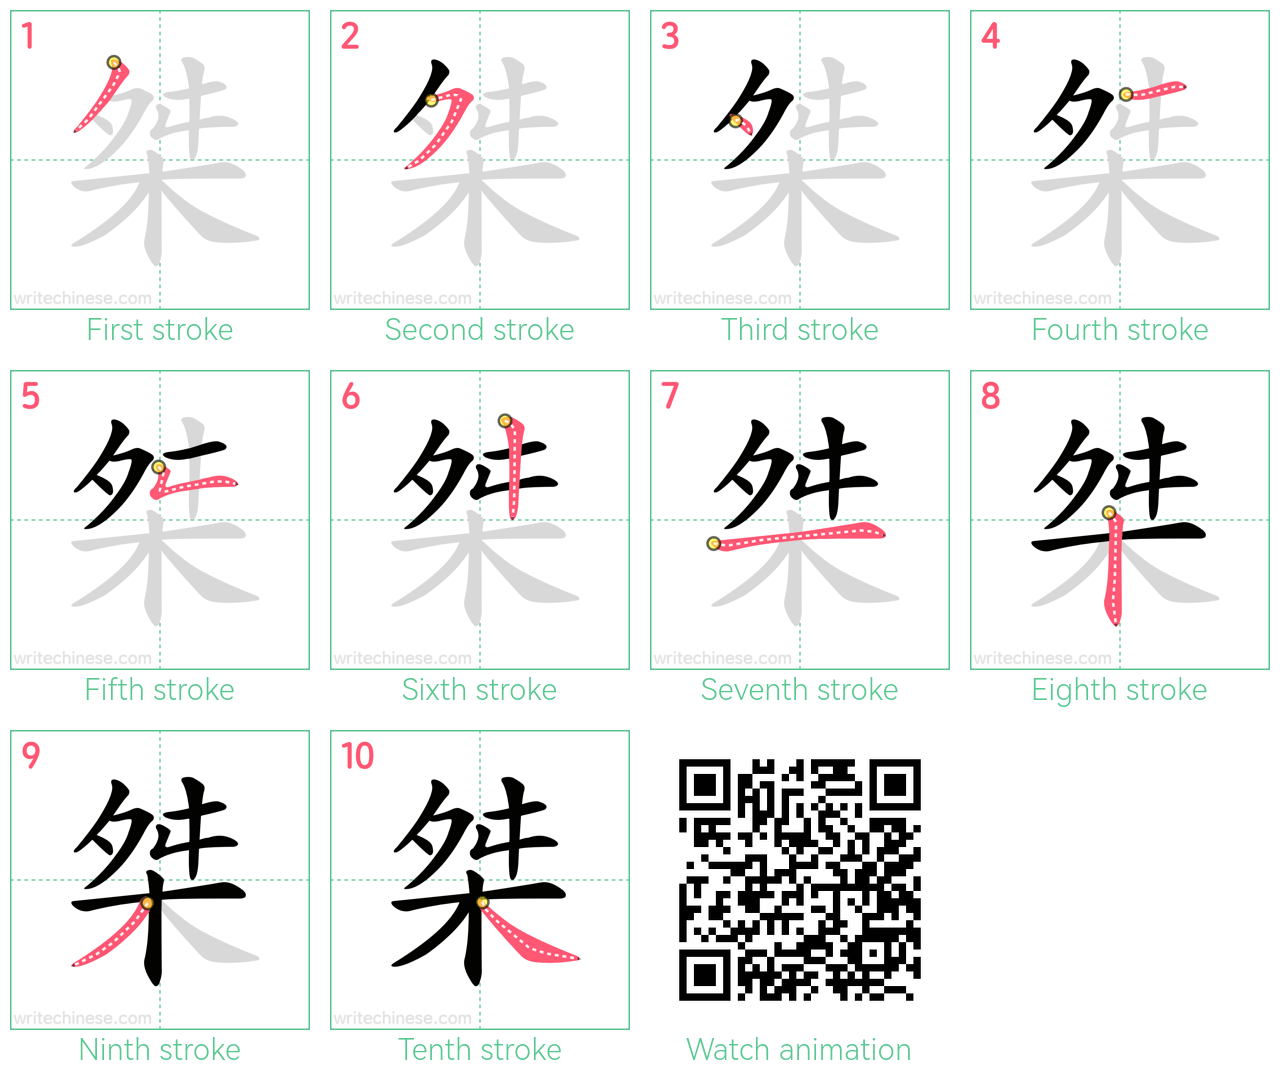 桀 step-by-step stroke order diagrams